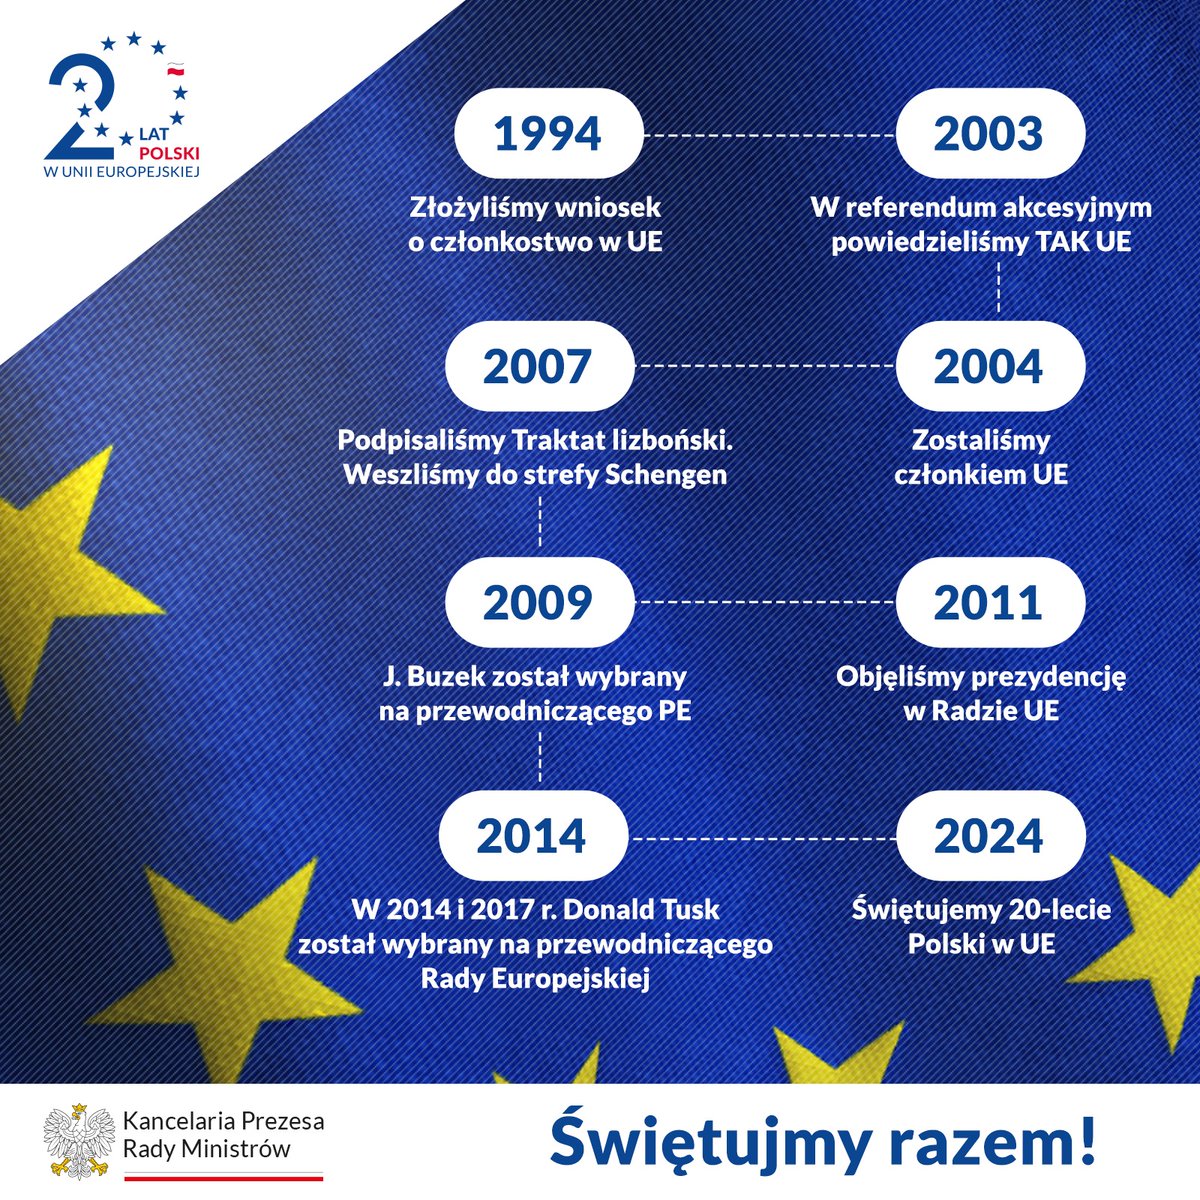 🇵🇱 🇪🇺 Od 2004 roku nasz kraj aktywnie uczestniczy w budowaniu silniejszej, bardziej zjednoczonej Europy. To czas sukcesów, wyzwań i wzajemnej współpracy, która przynosi korzyści naszej gospodarce i społeczeństwu⤵️